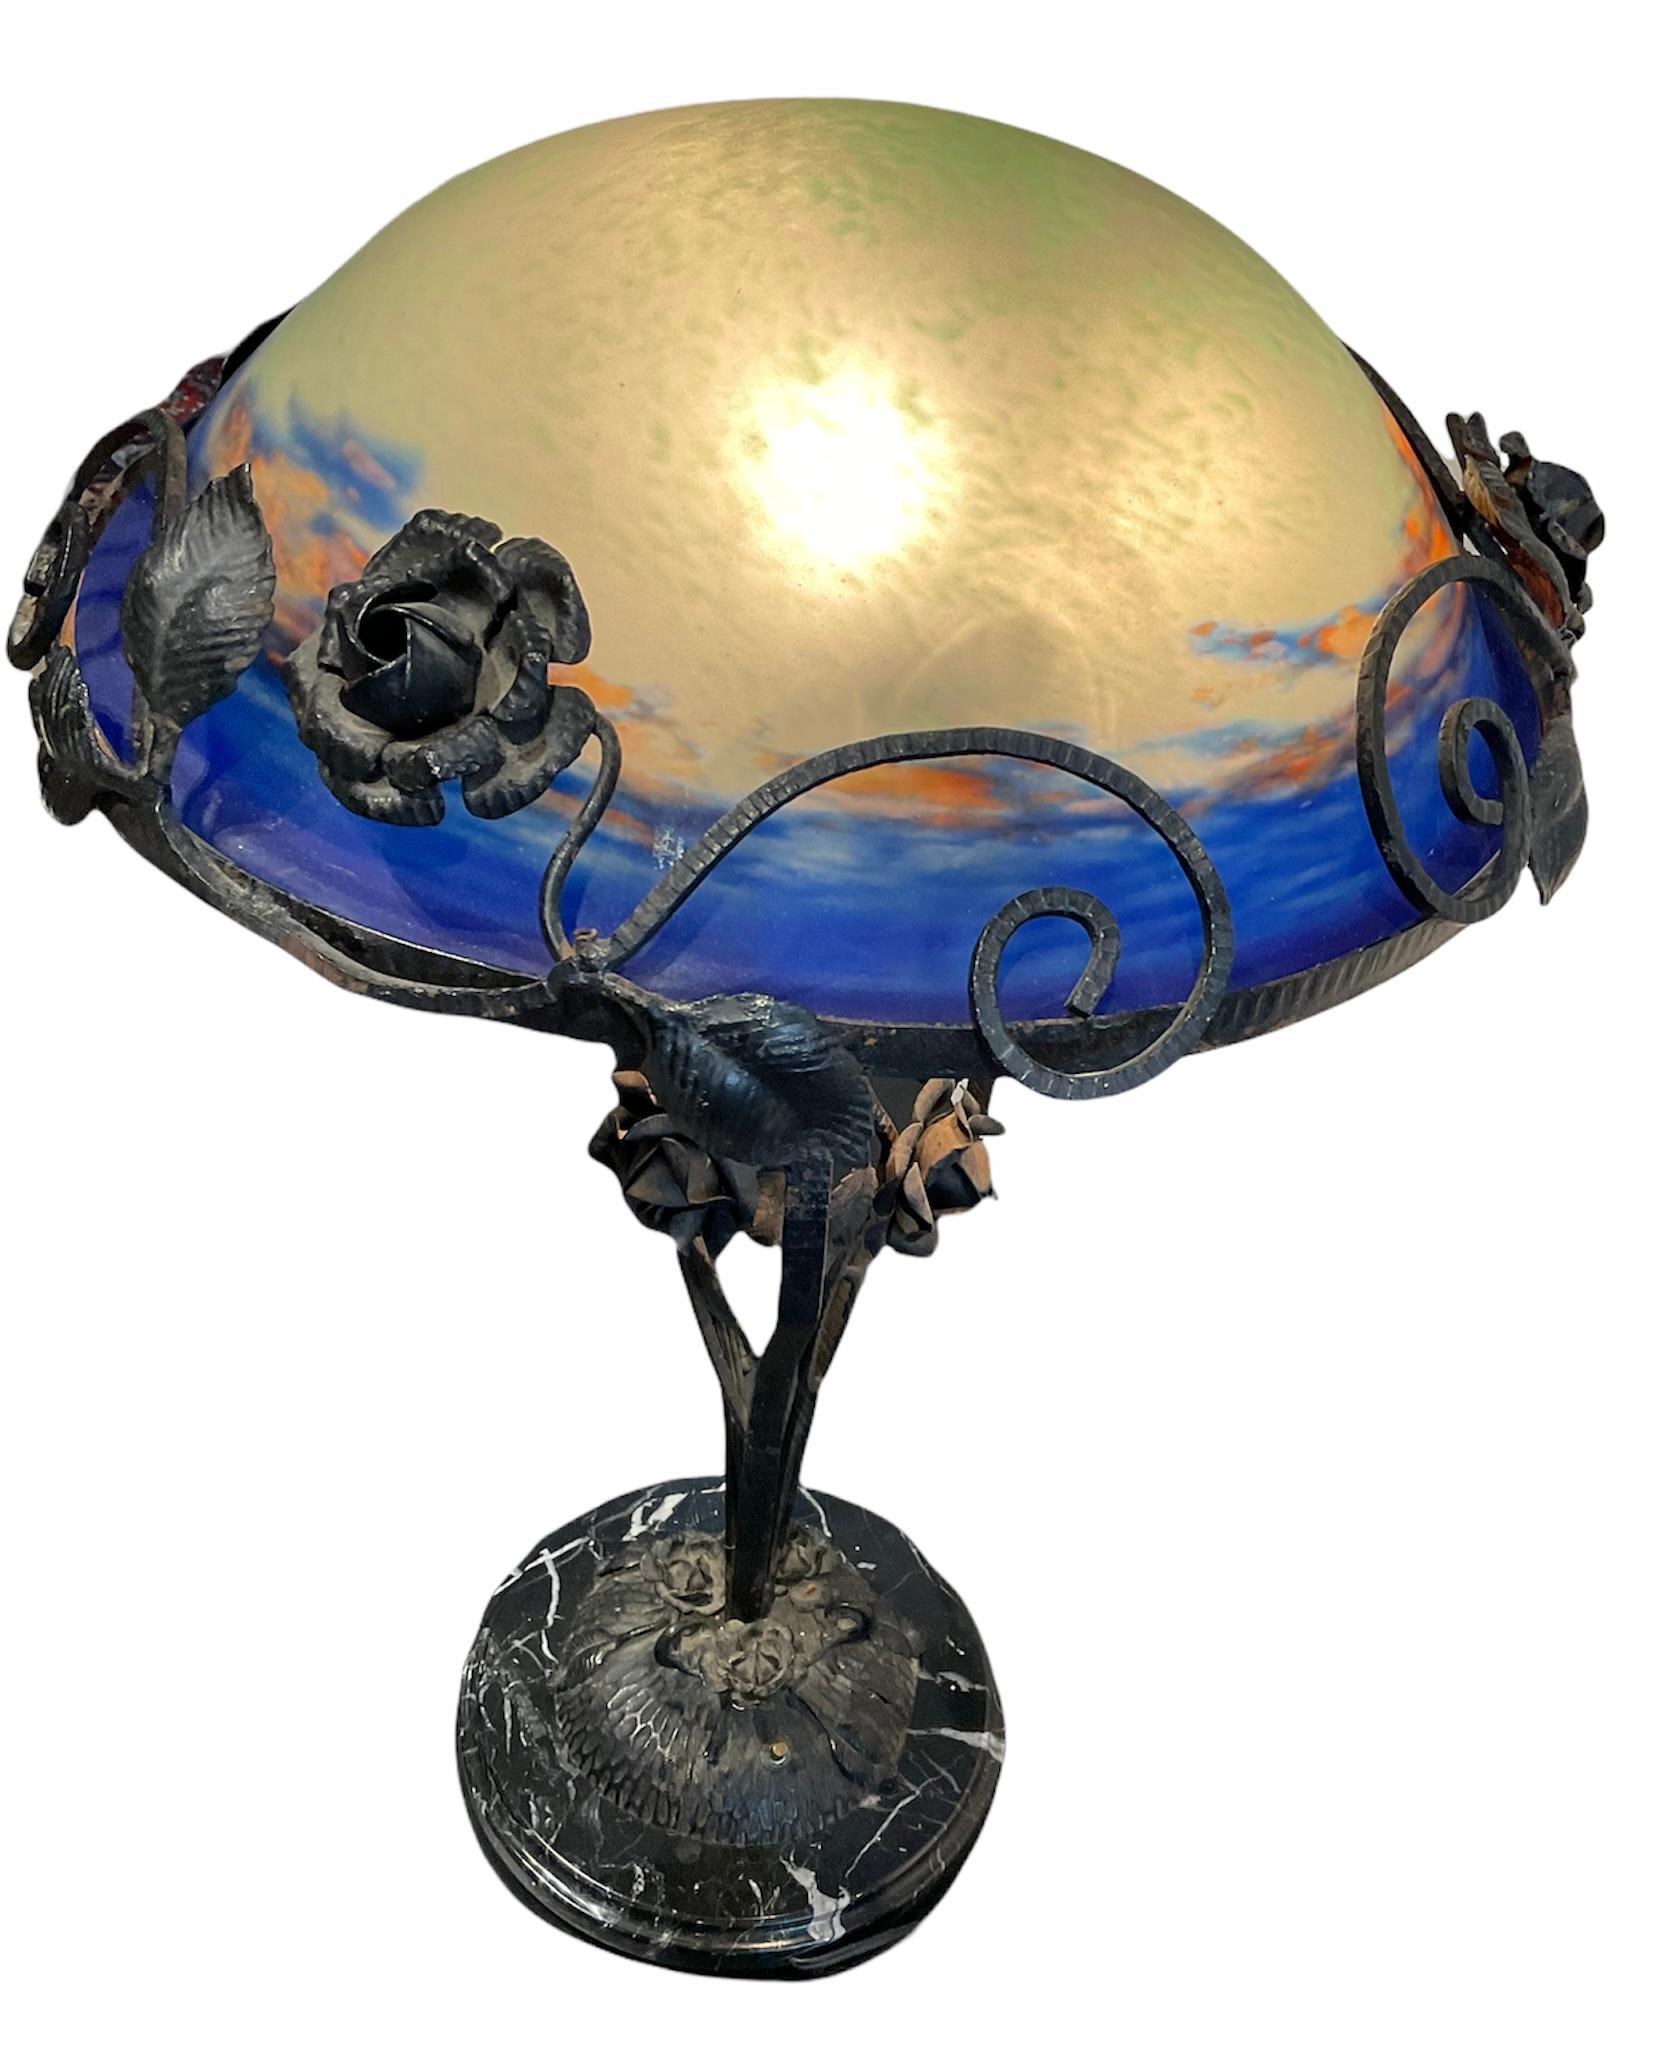 Art Glass Degue Art Nouveau Style Hand Painted Lamp For Sale